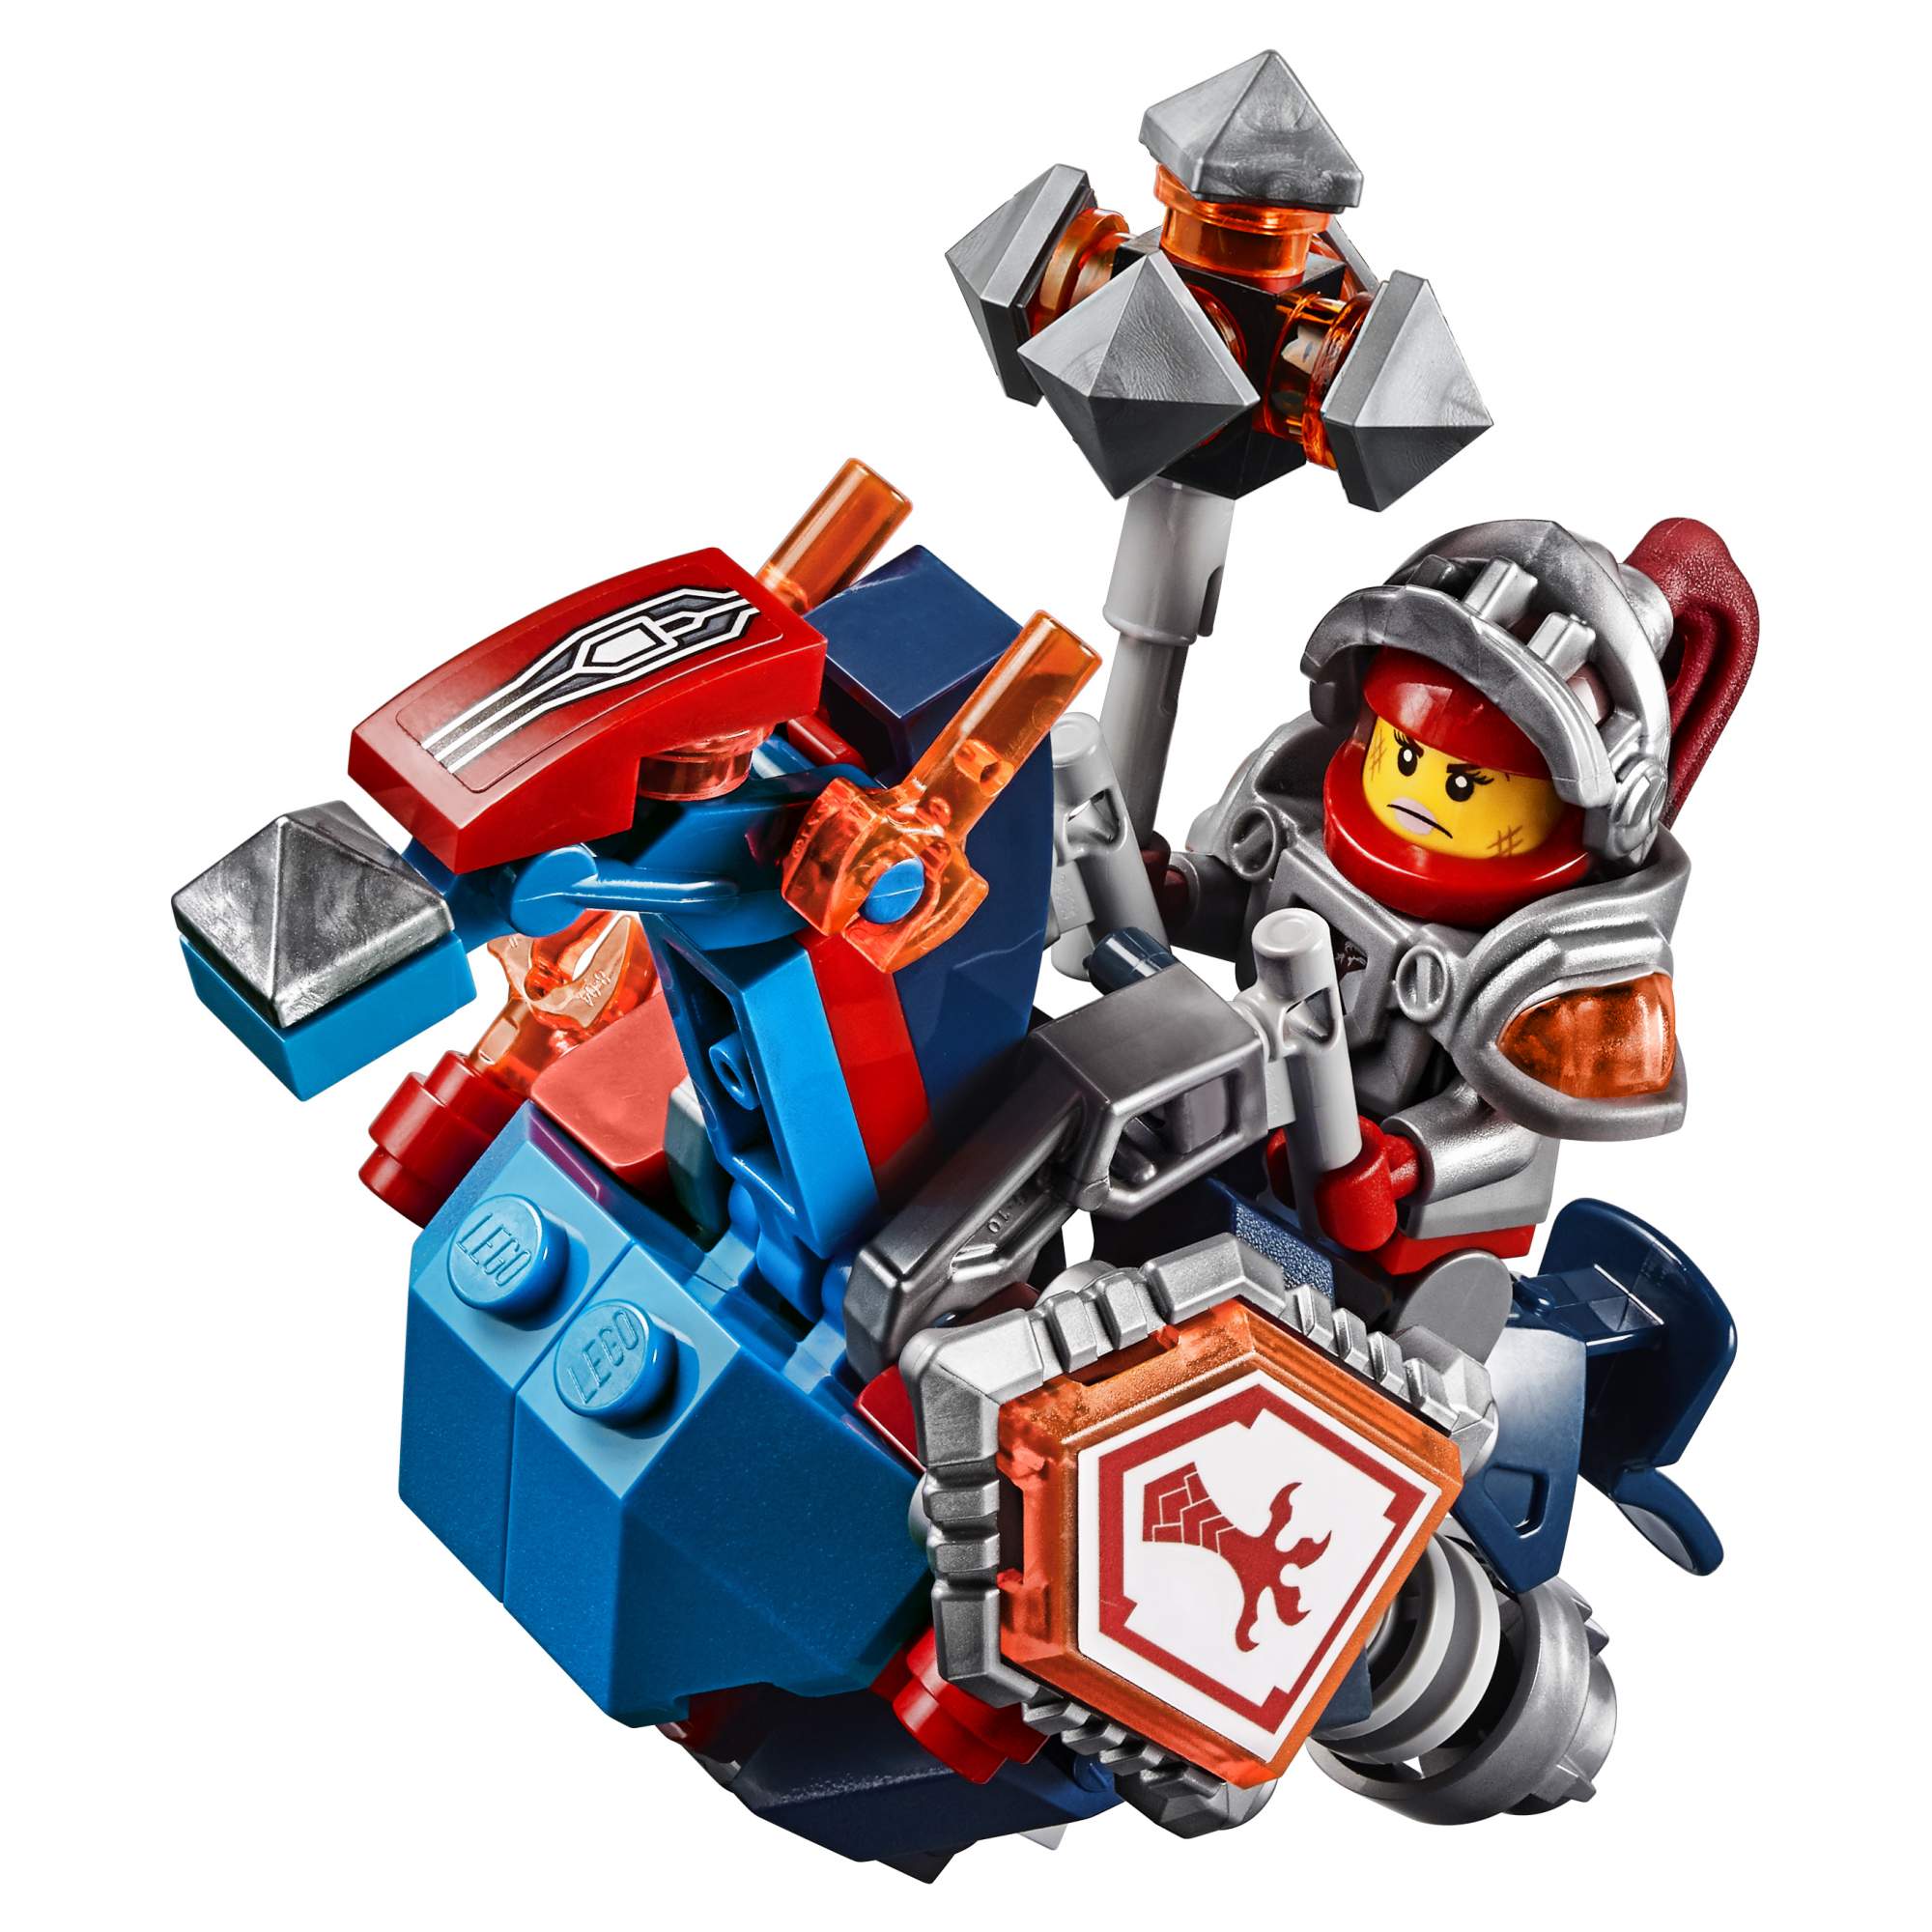 Конструктор LEGO Nexo Knights Безумная колесница Укротителя (70314)